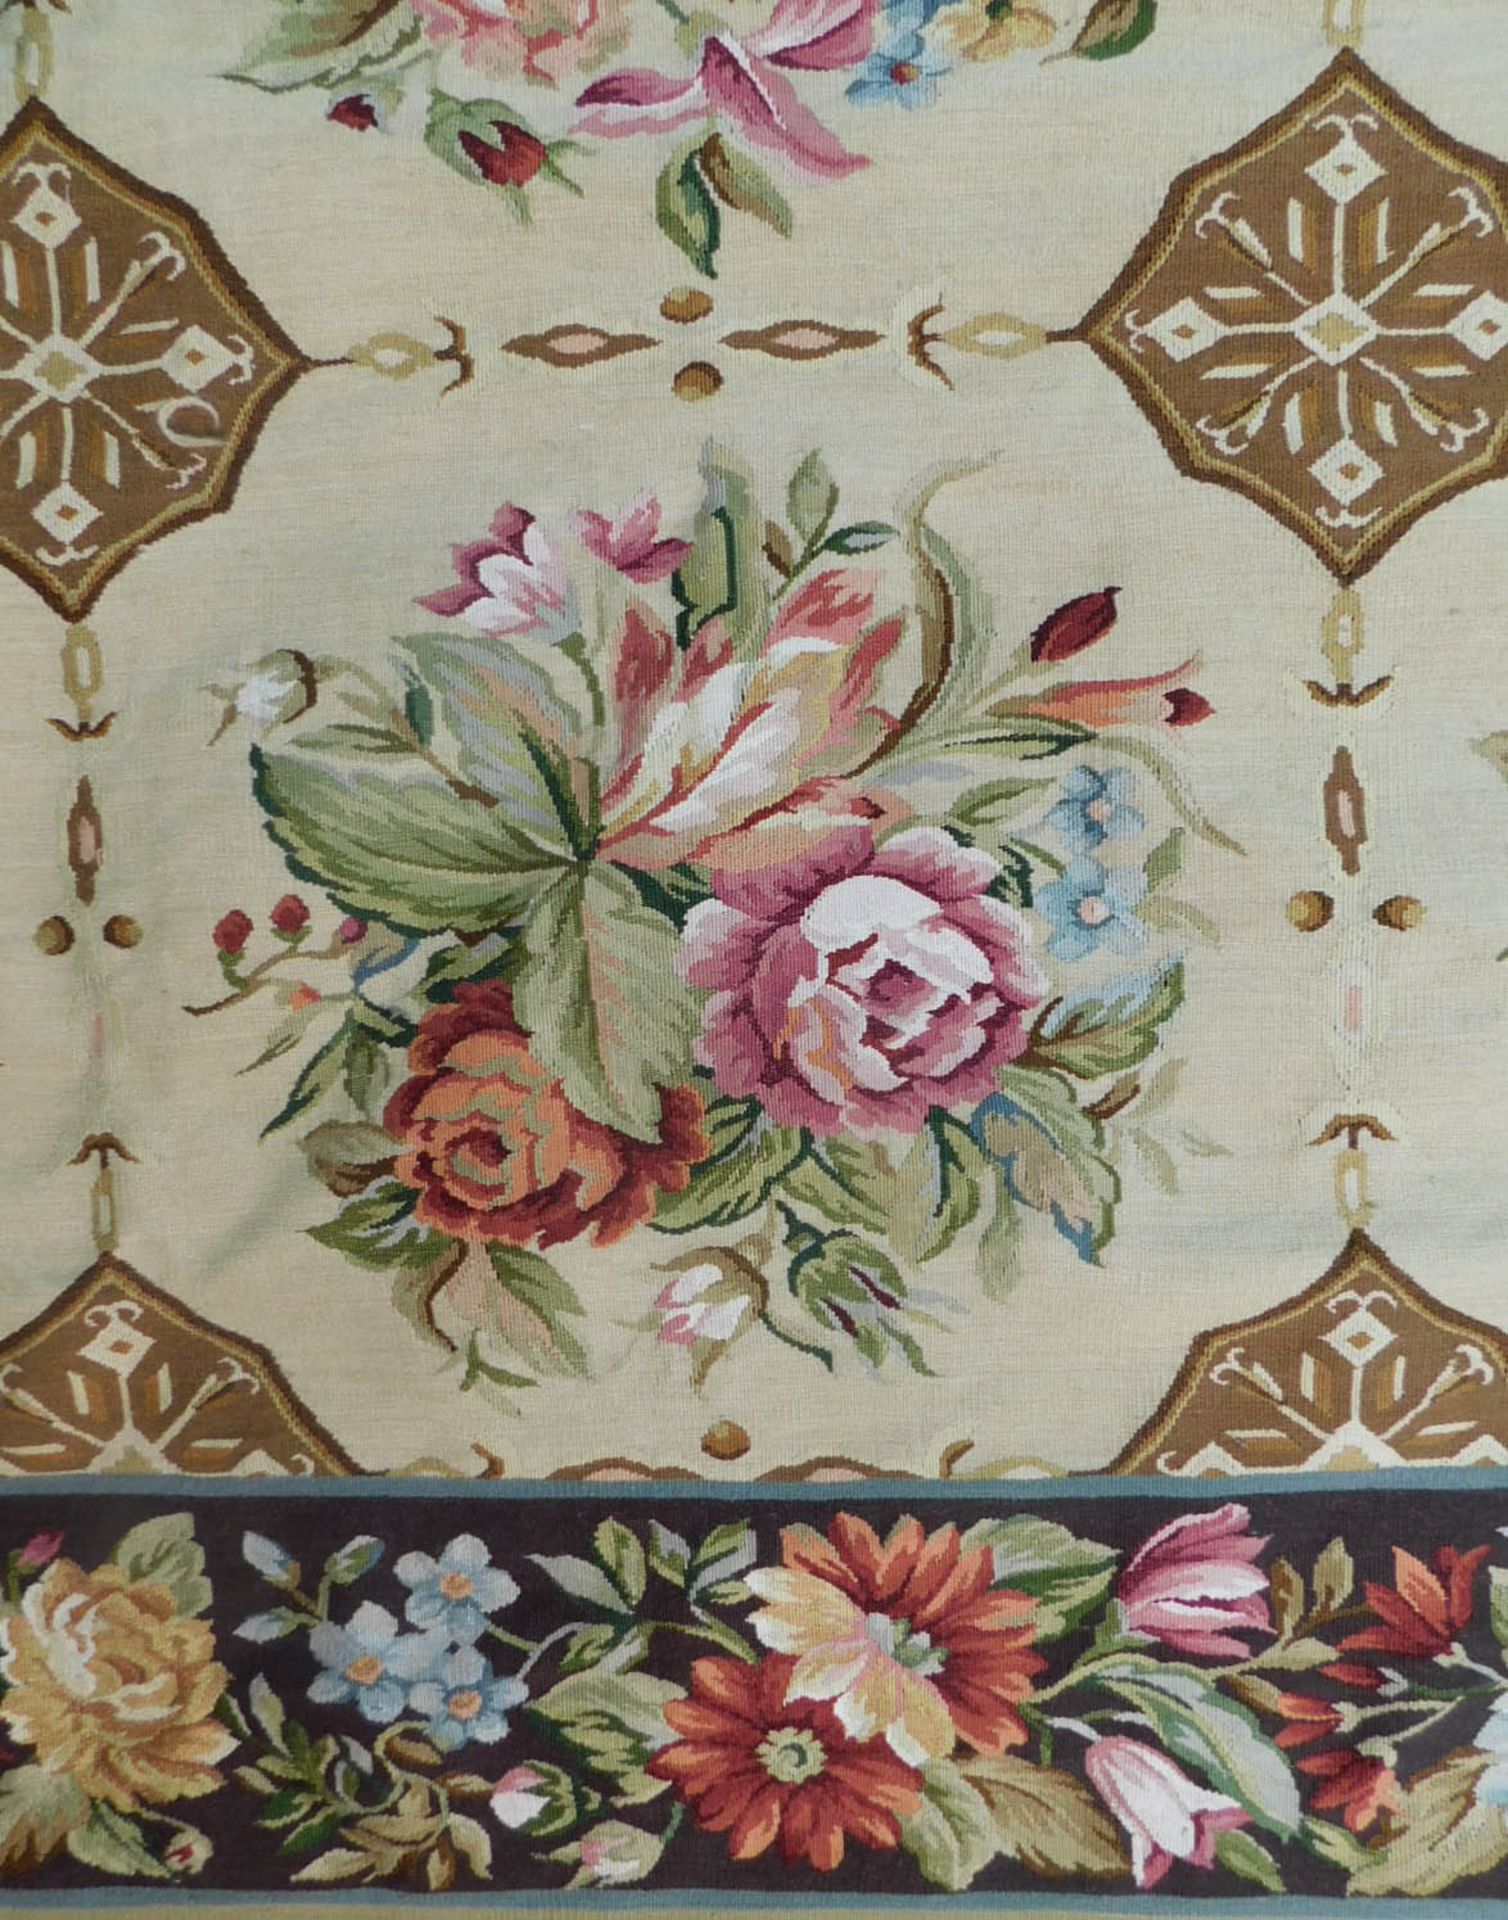 Teppich in Aubusson Technik und Louis XVI Stil. - Bild 4 aus 6